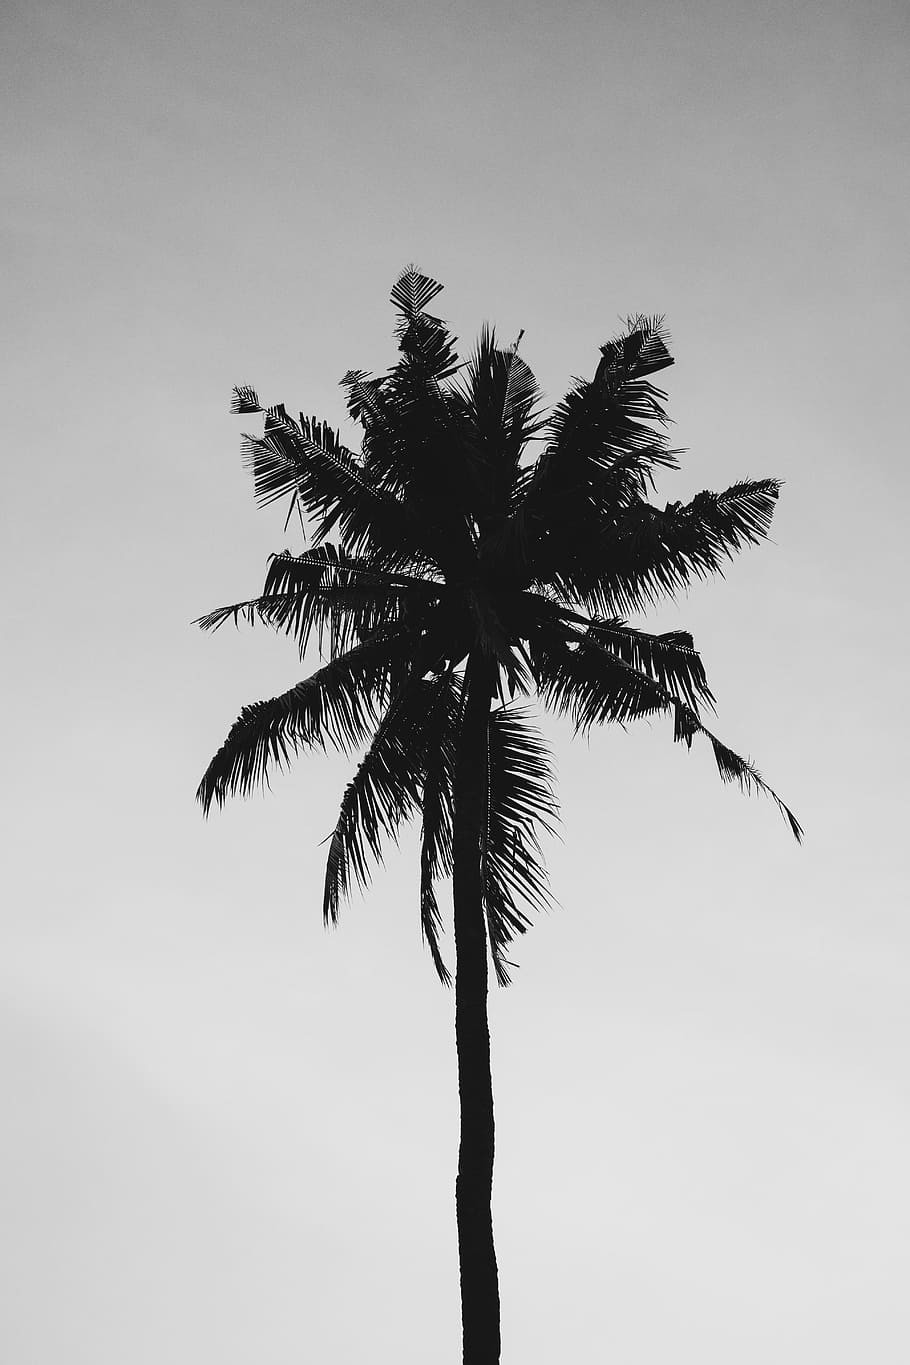 кокос, дерево, облачно, лето, природа, пальма, серое небо, зеленый, завод, тропический климат